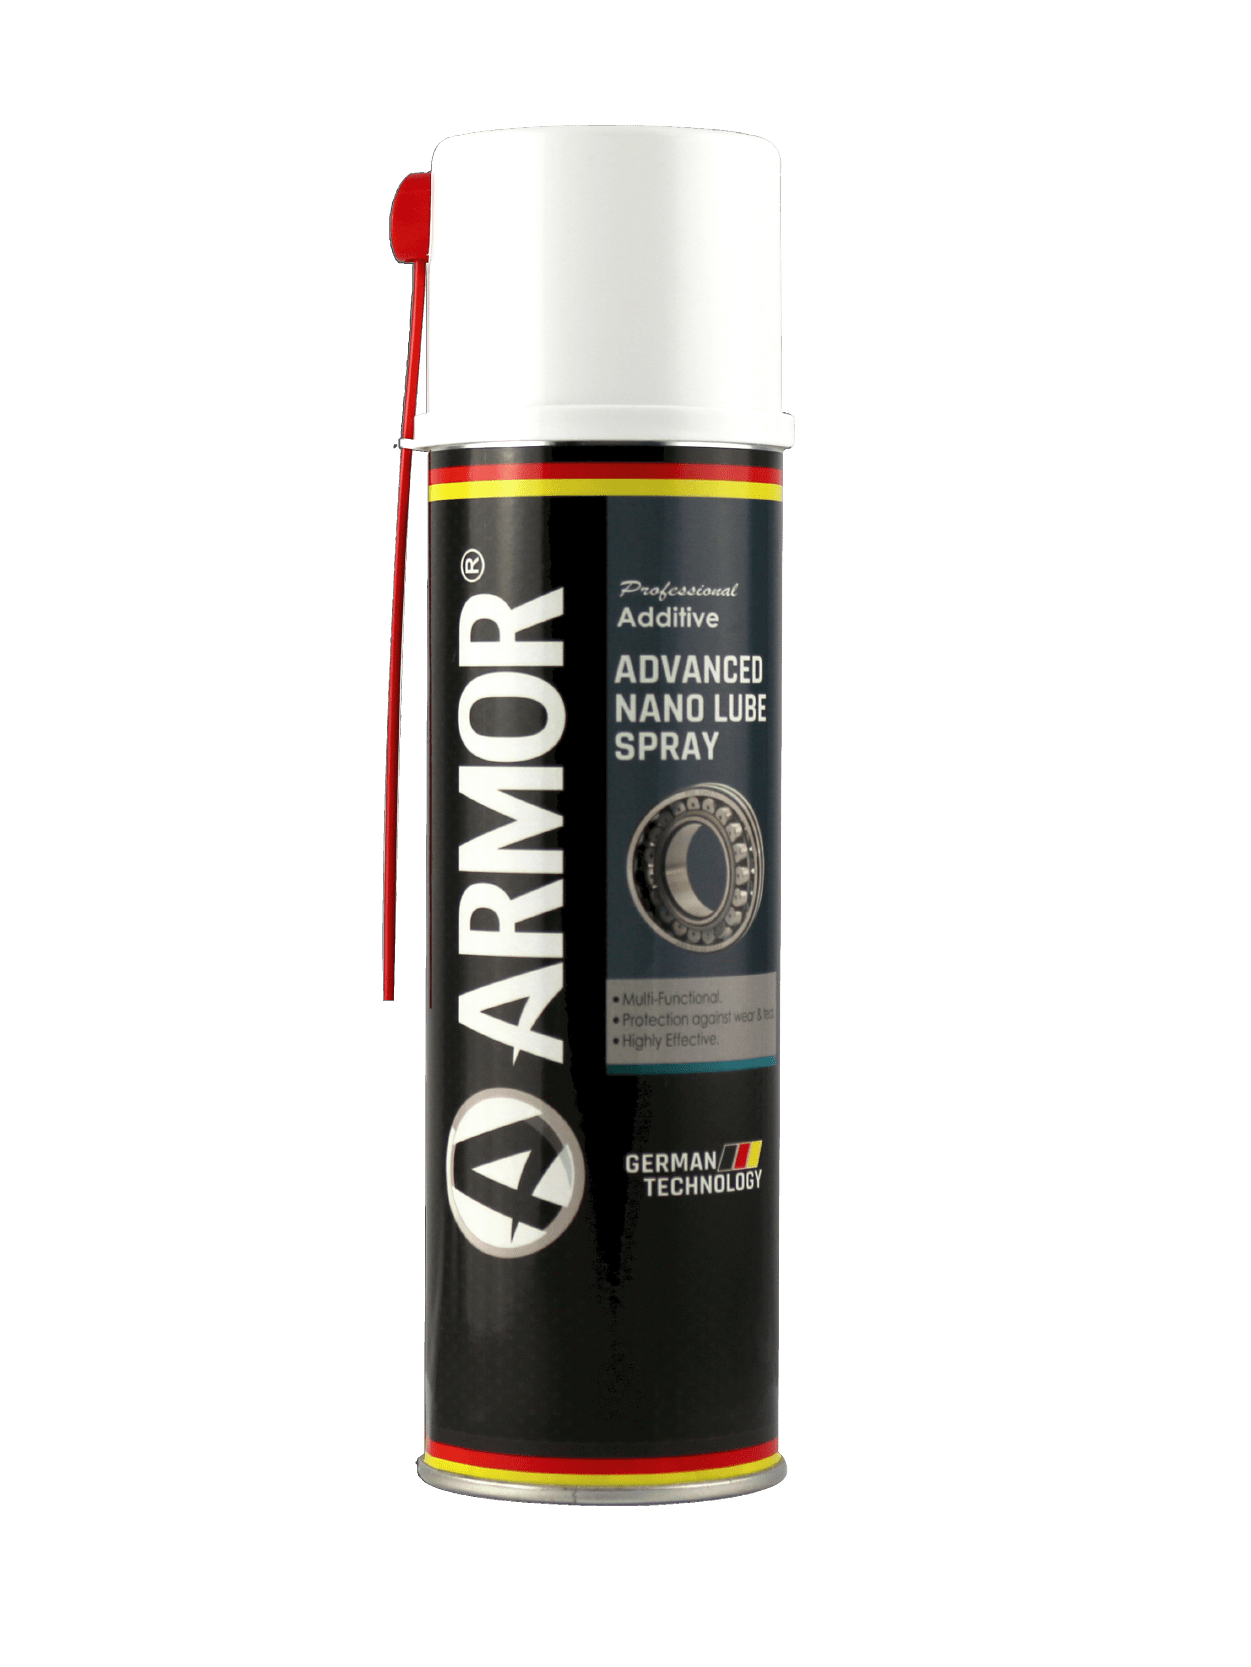 Advanced Nano Lube Spray